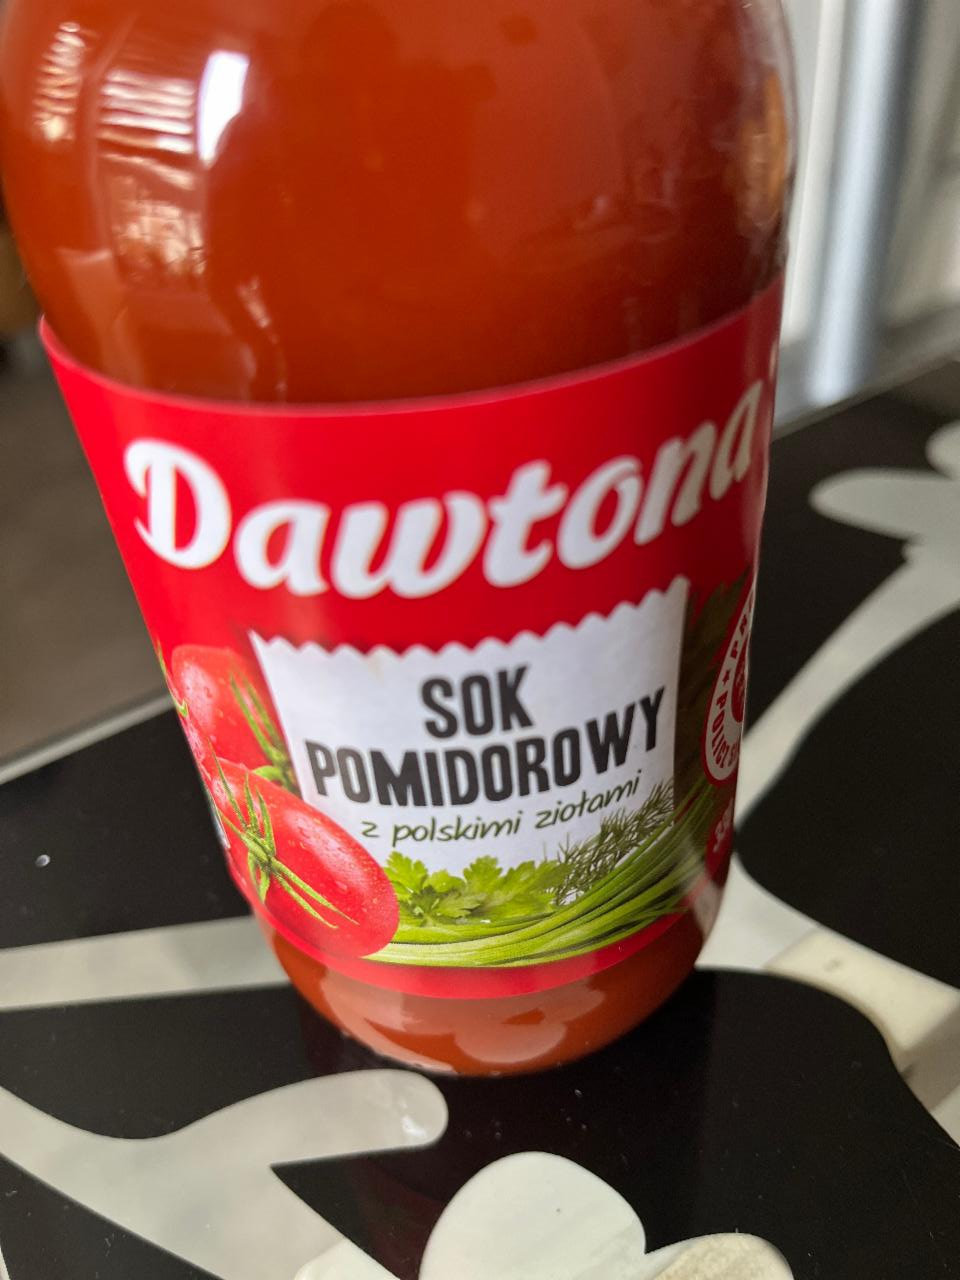 Zdjęcia - Dawtona Sok pomidorowy z polskimi ziołami 300 ml